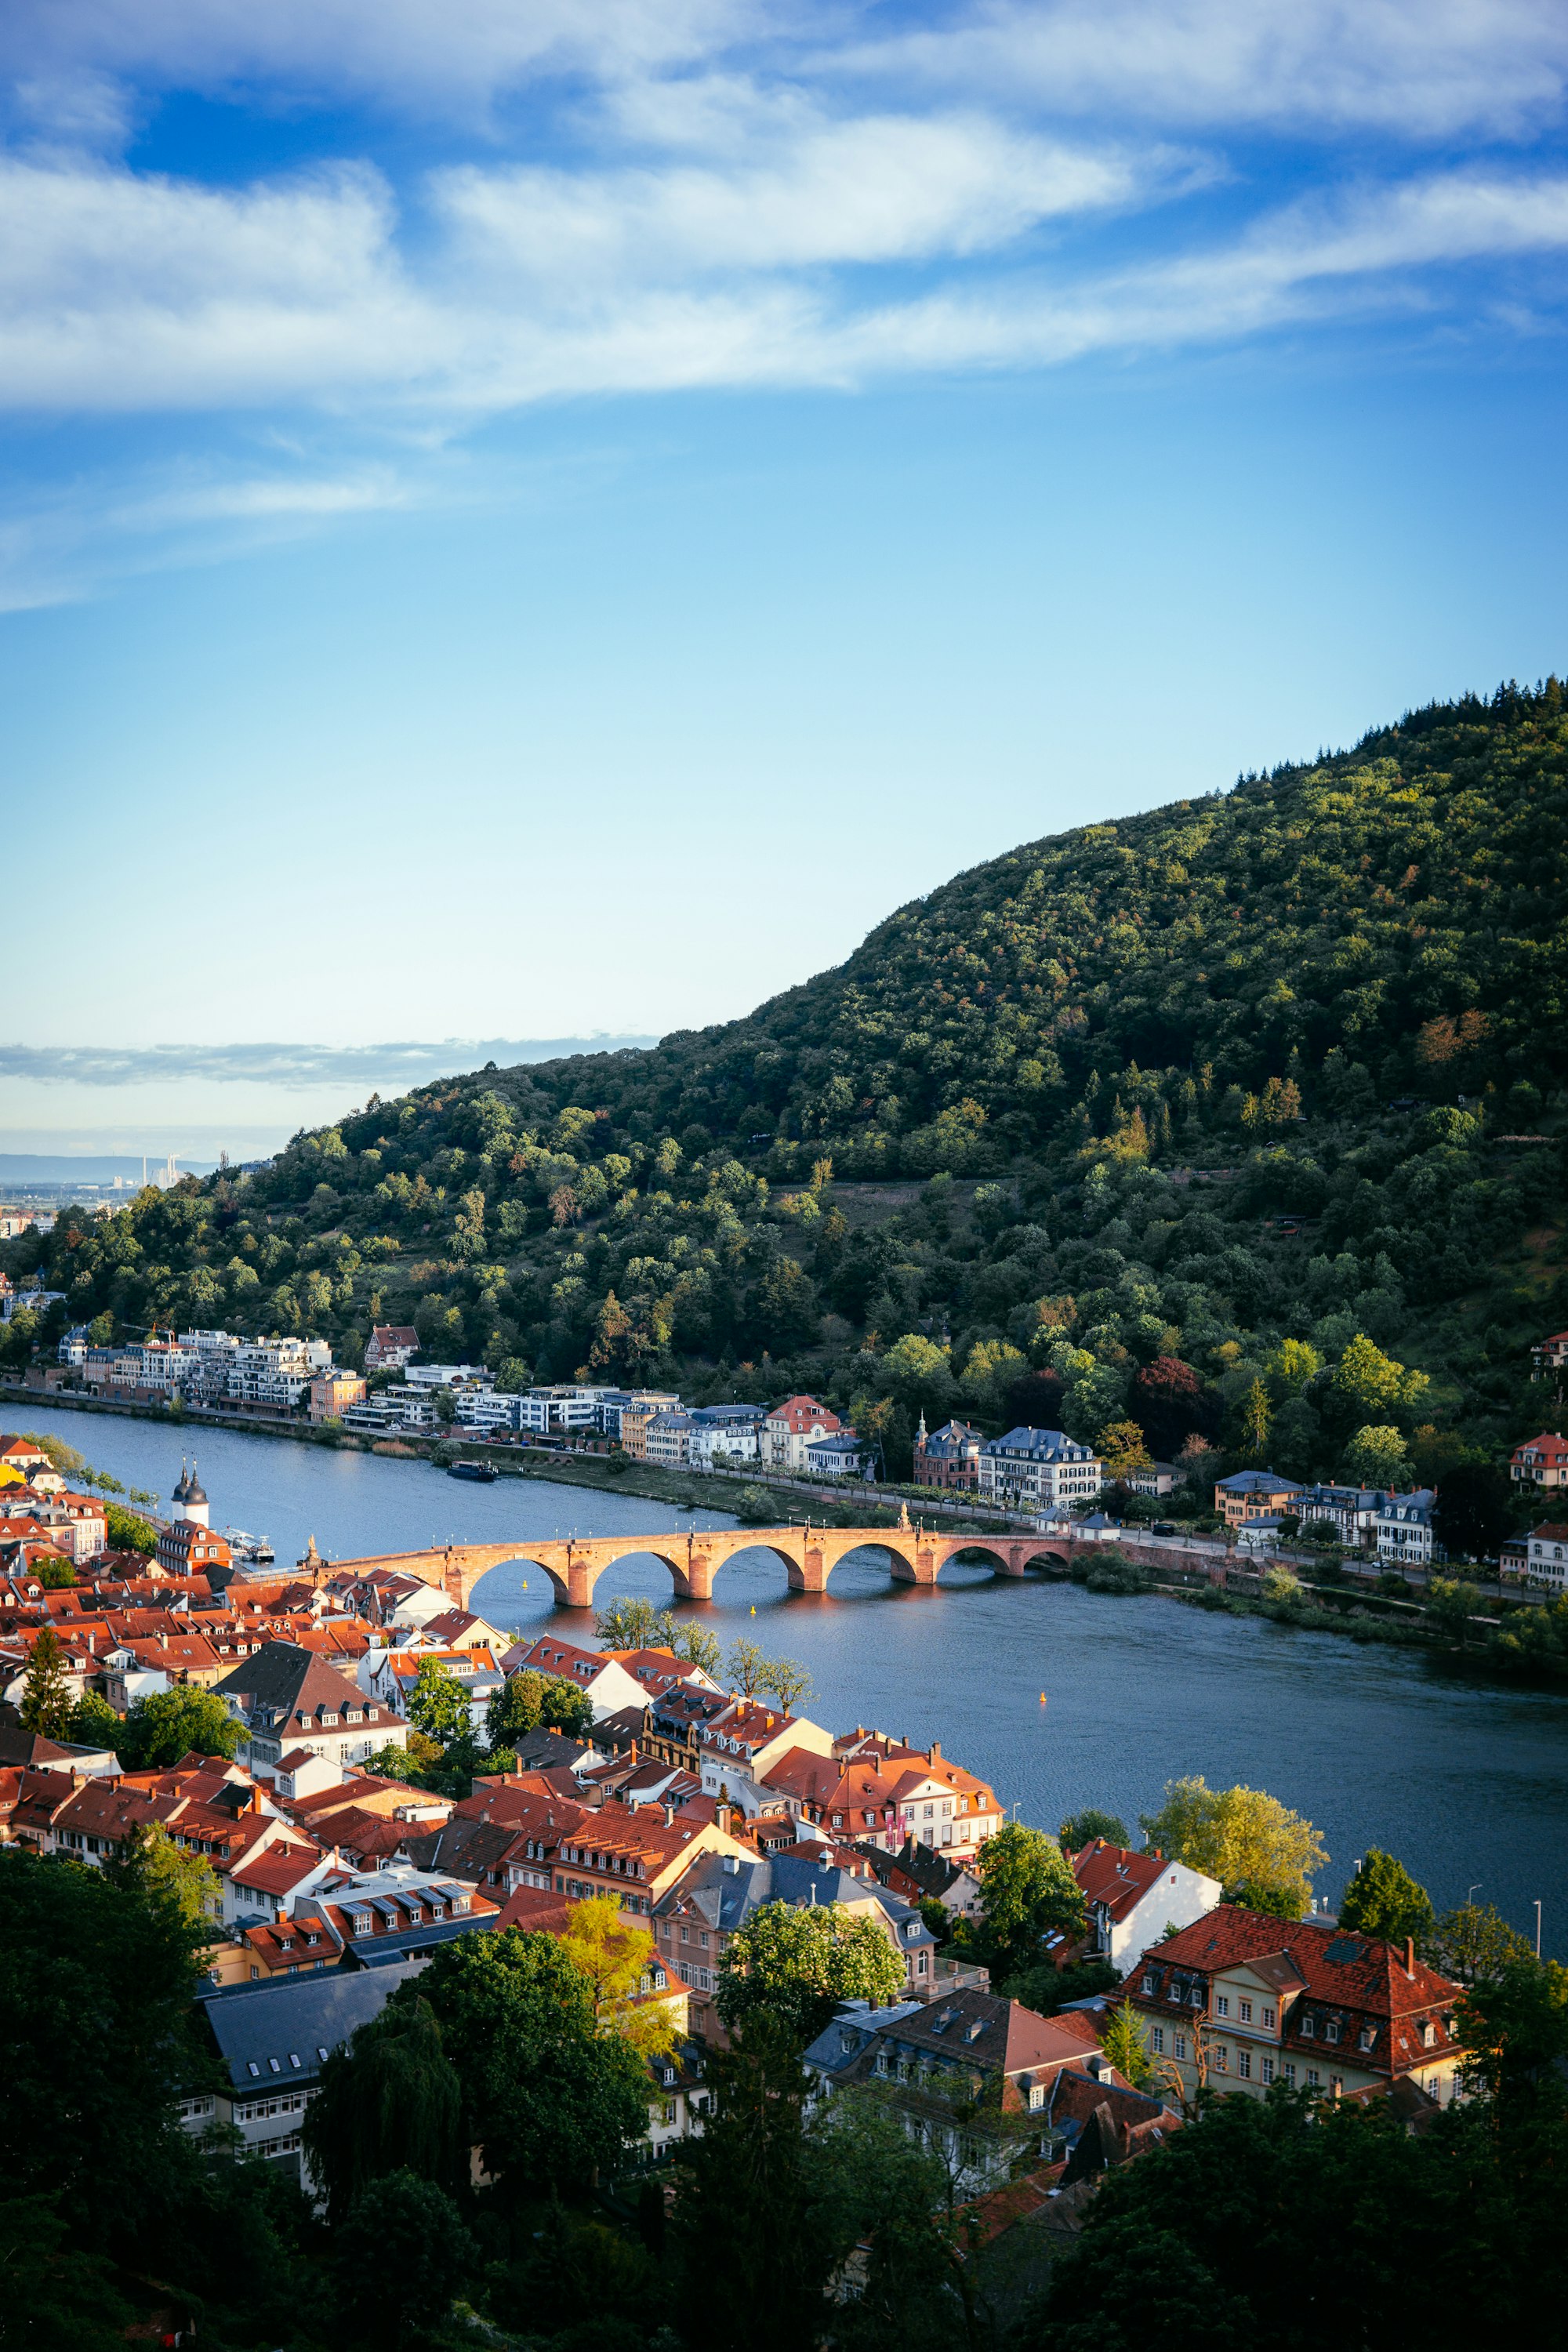 Leaving Heidelberg